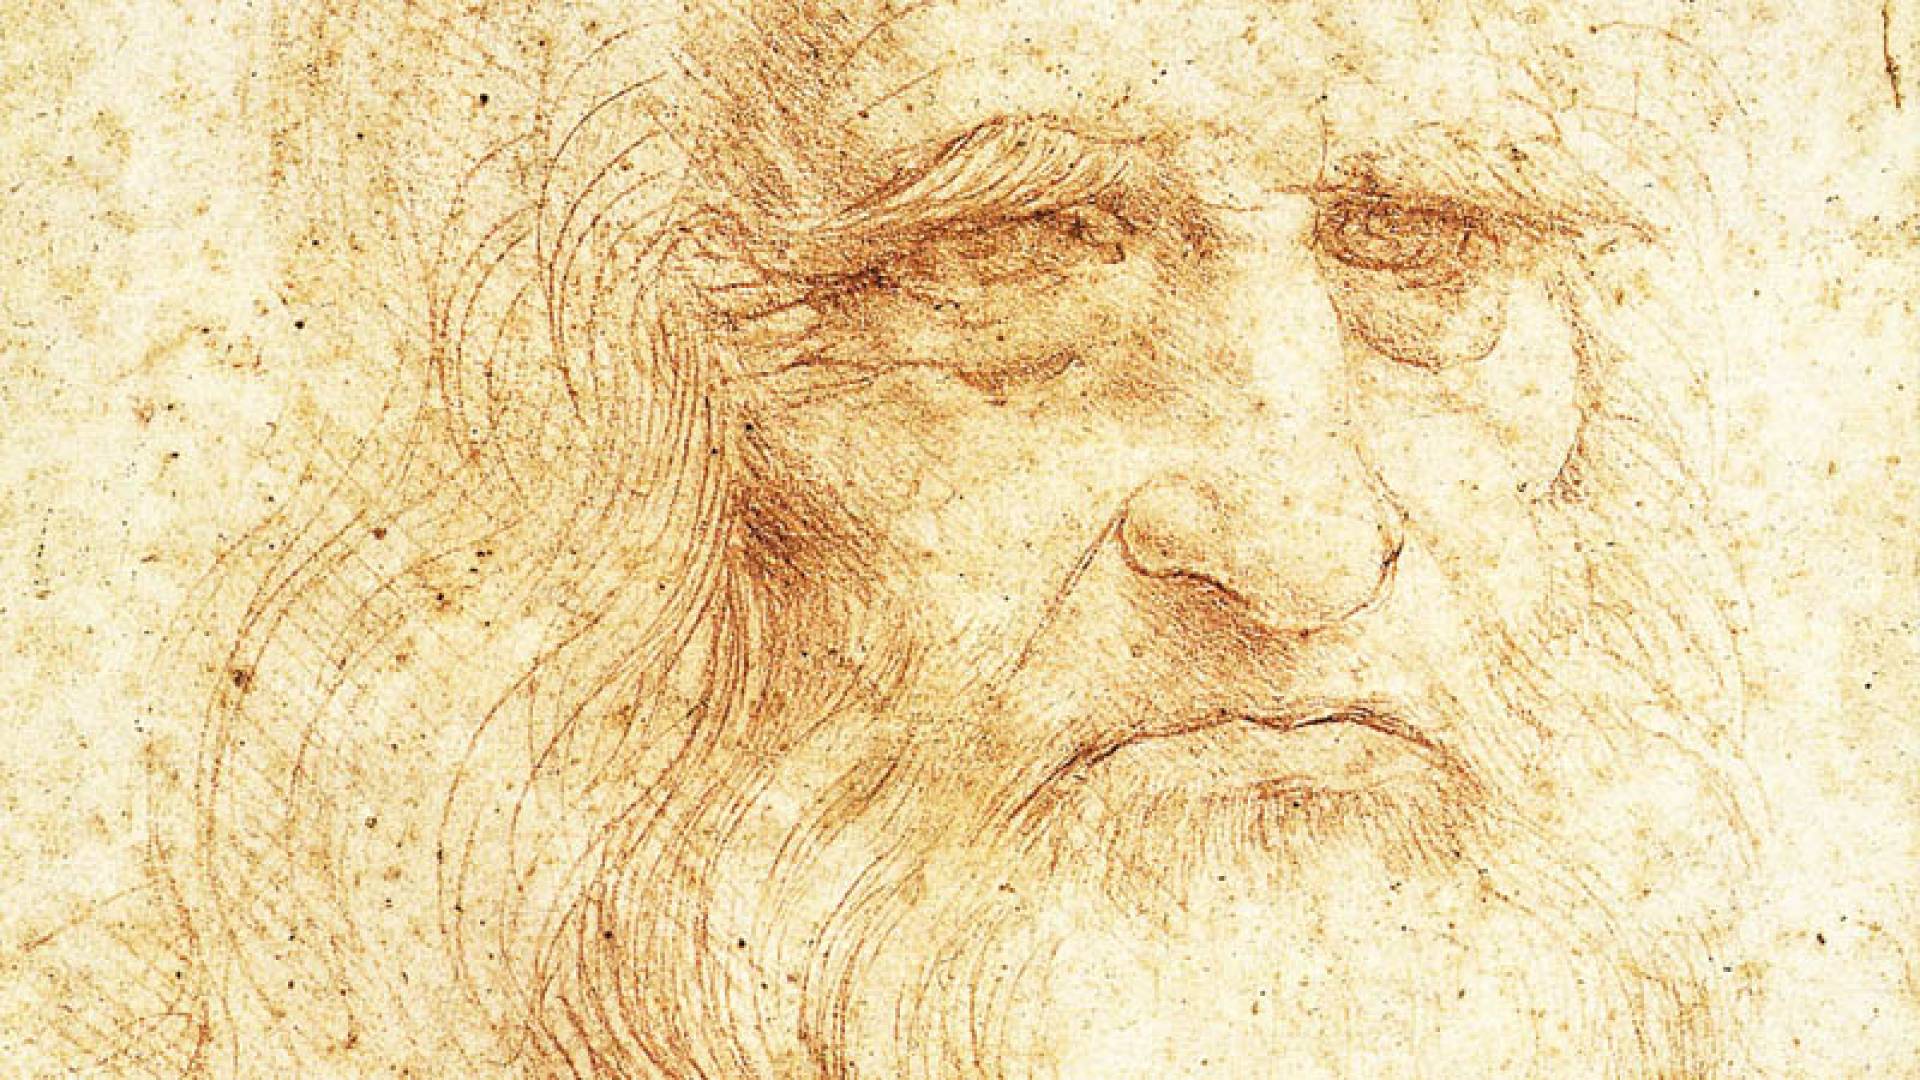 POLO REALE, Royal Library Leonardo Self-Portrait